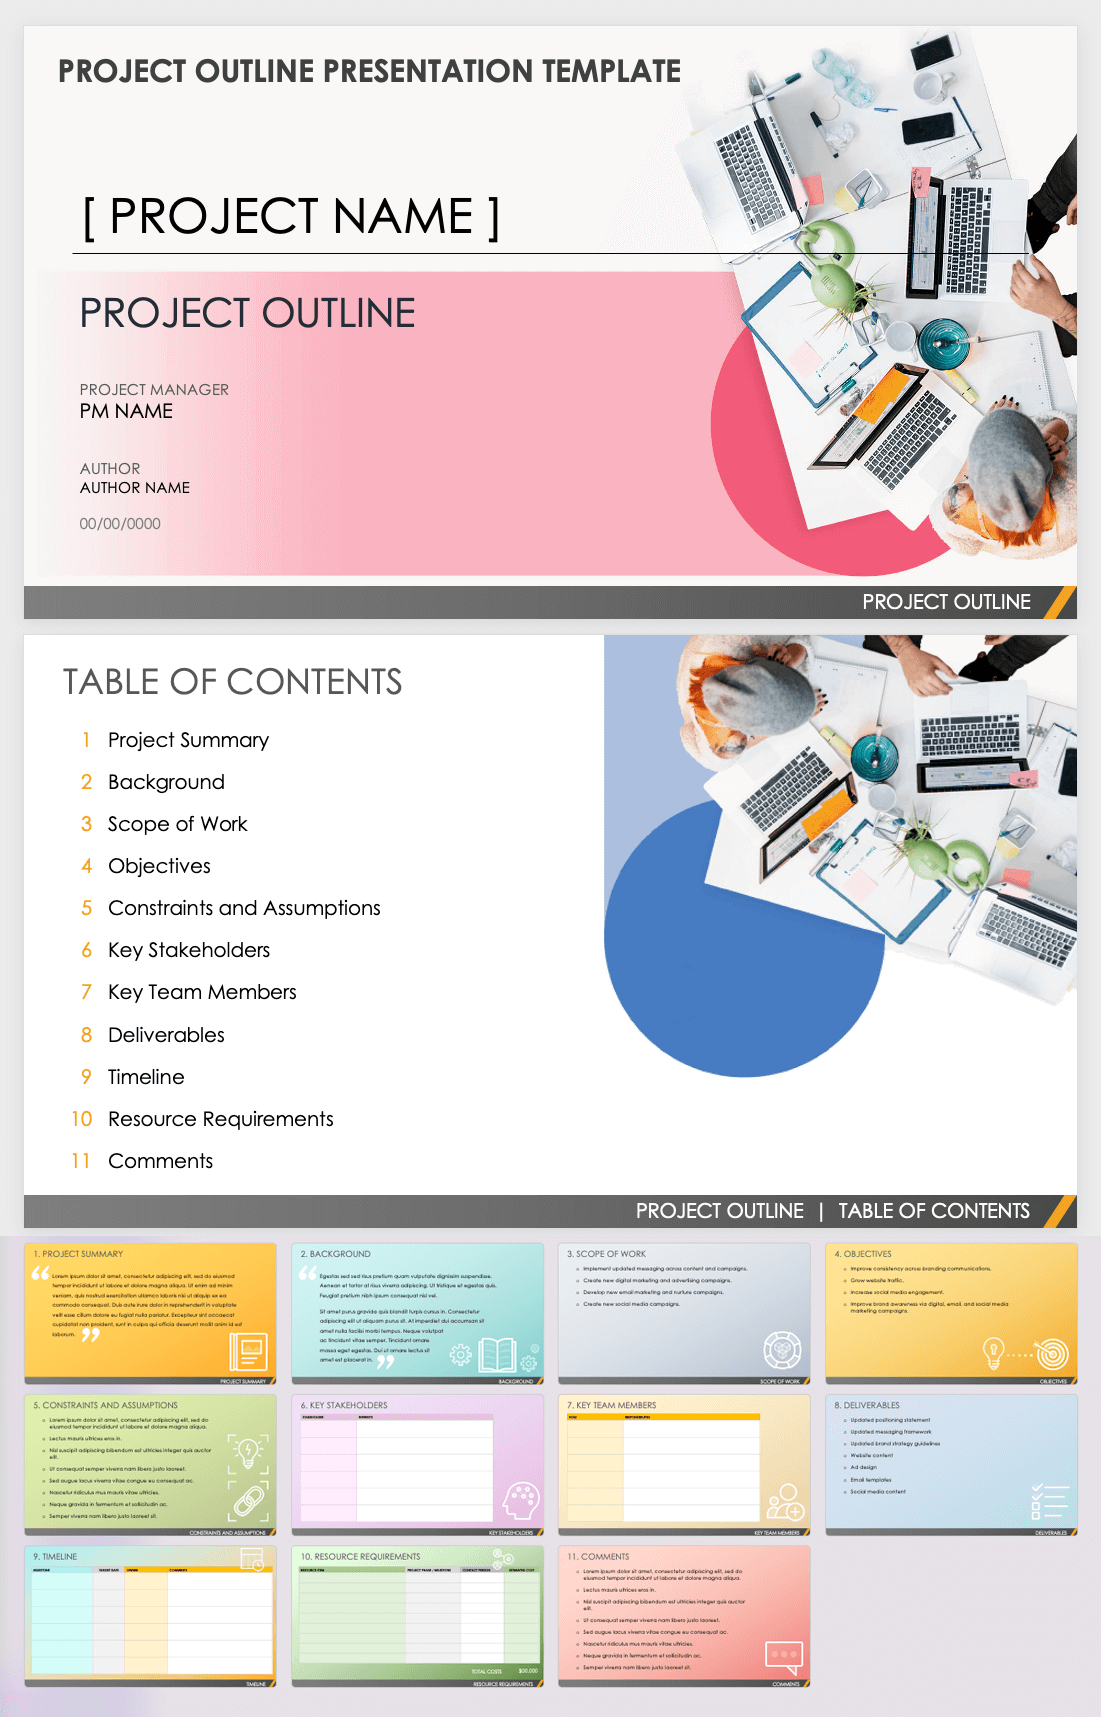 project management presentation outline